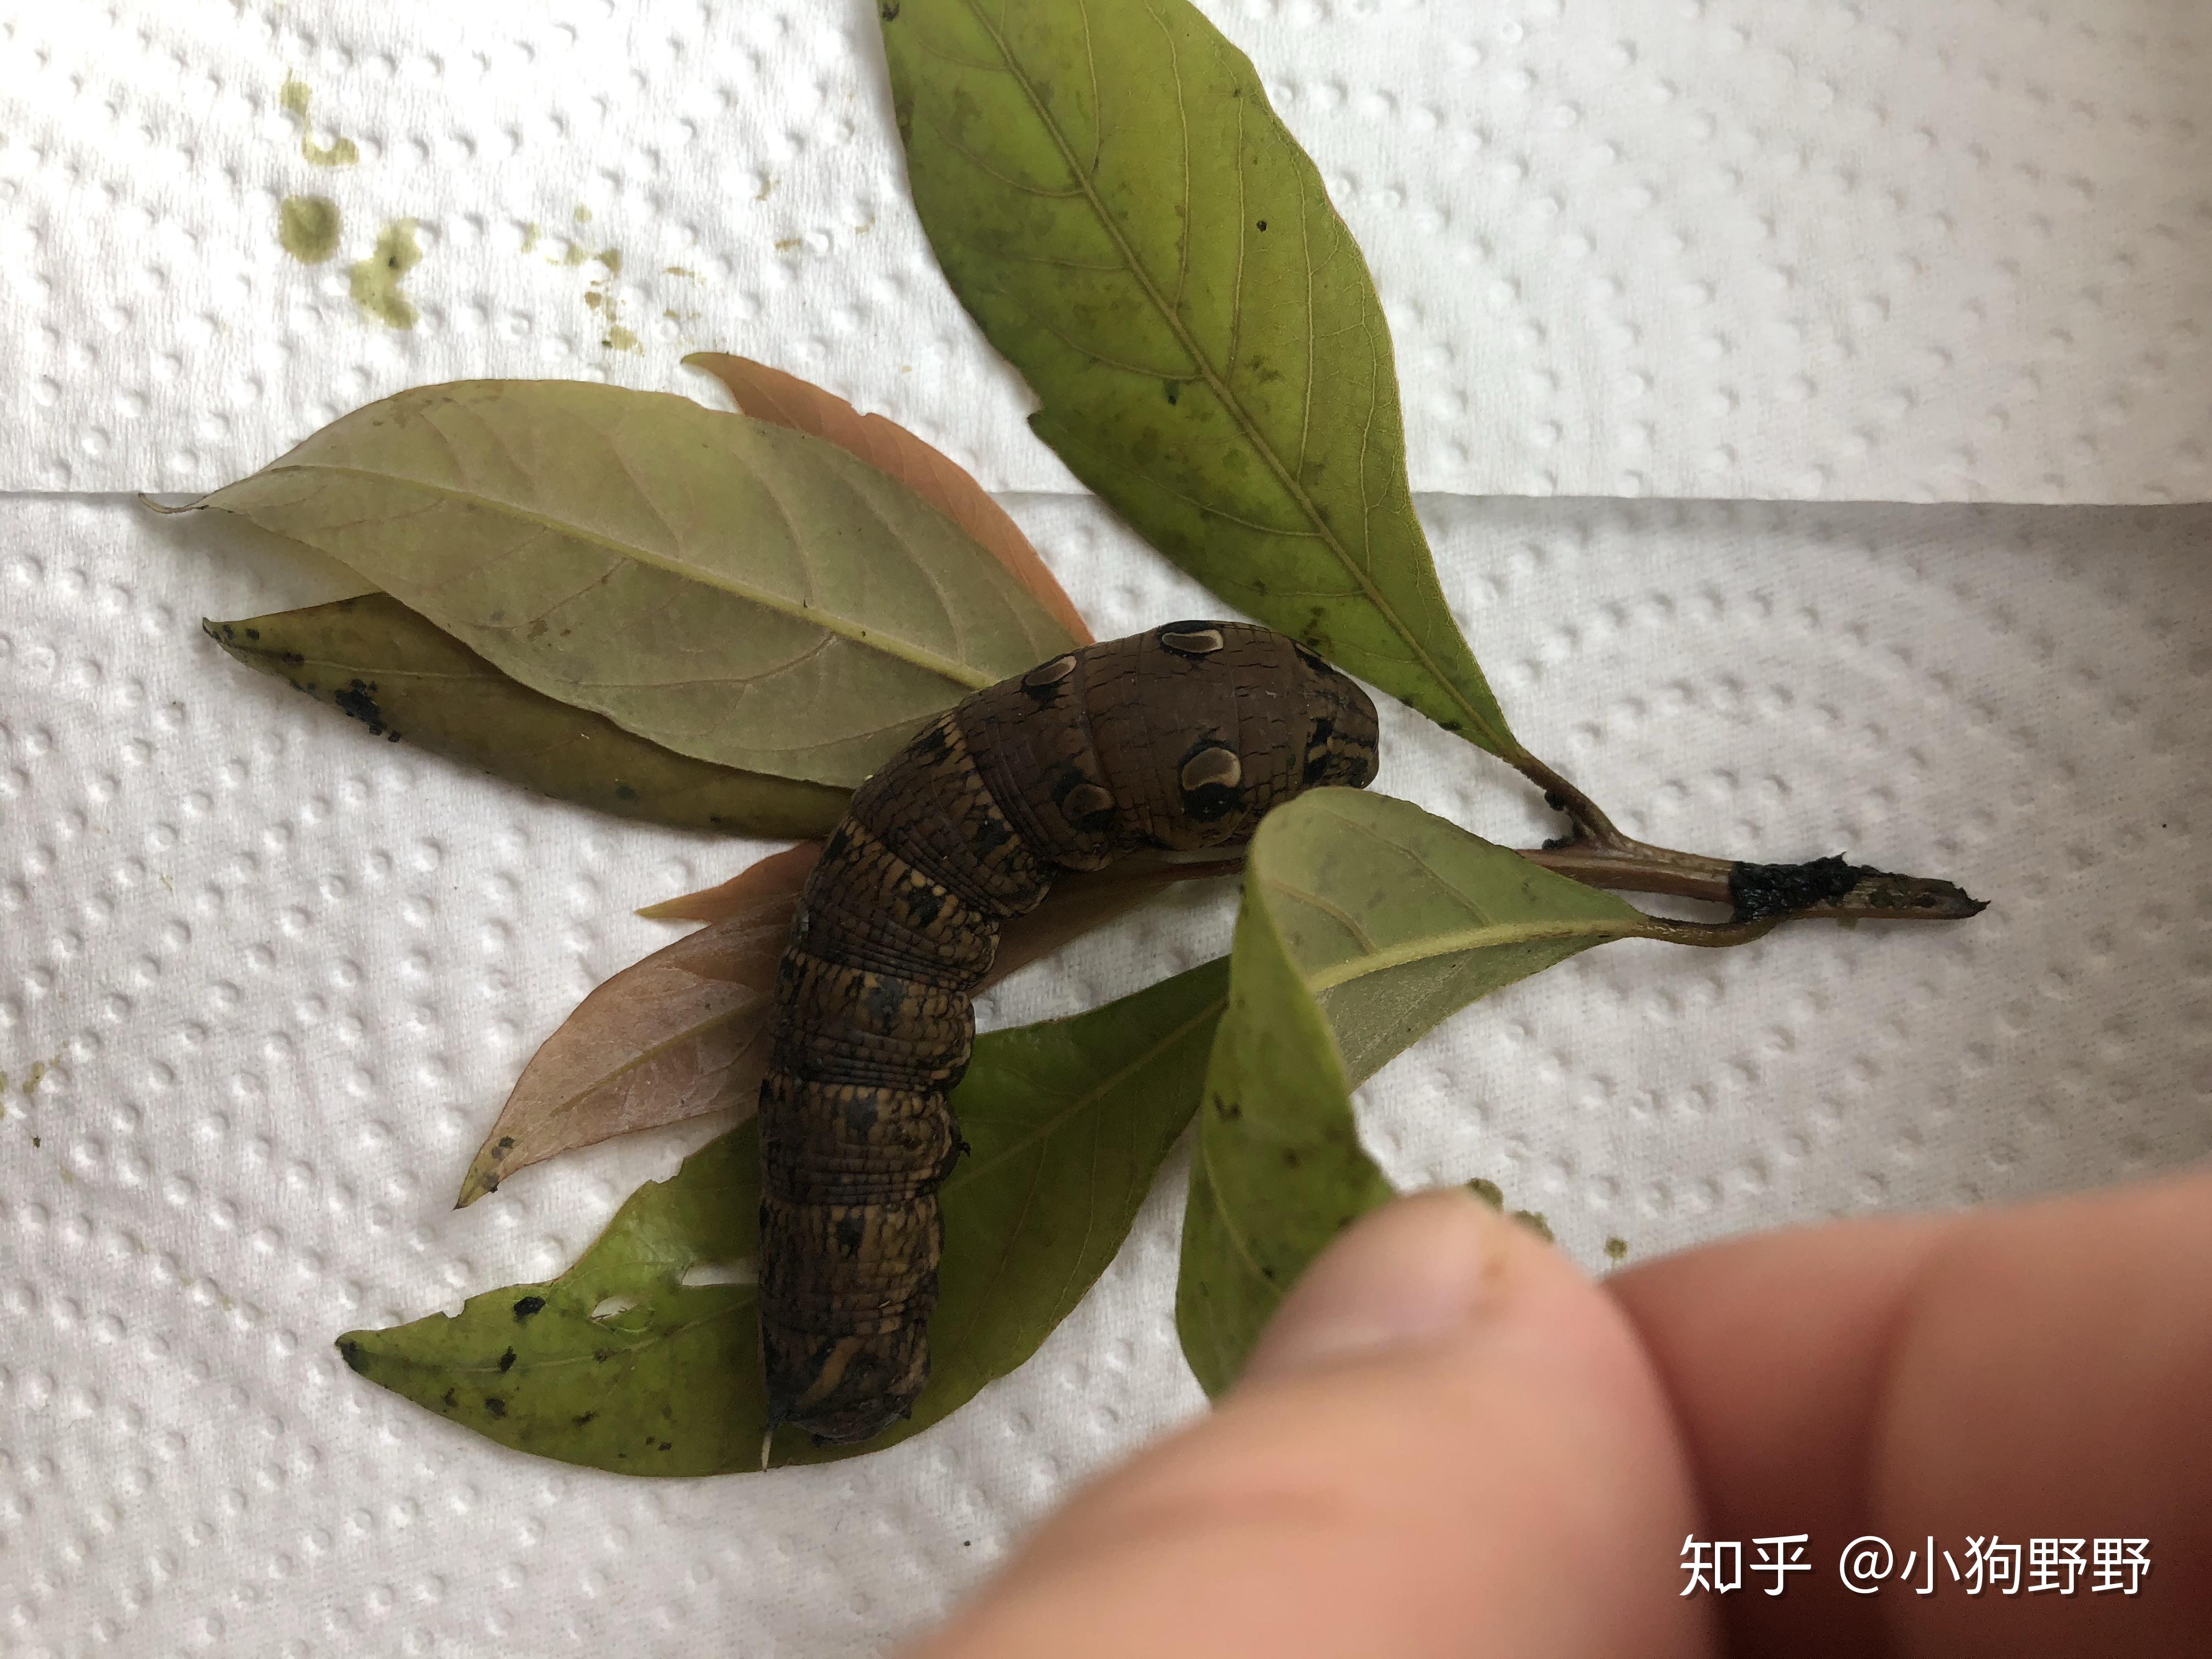 中国常见的蝴蝶幼虫图片